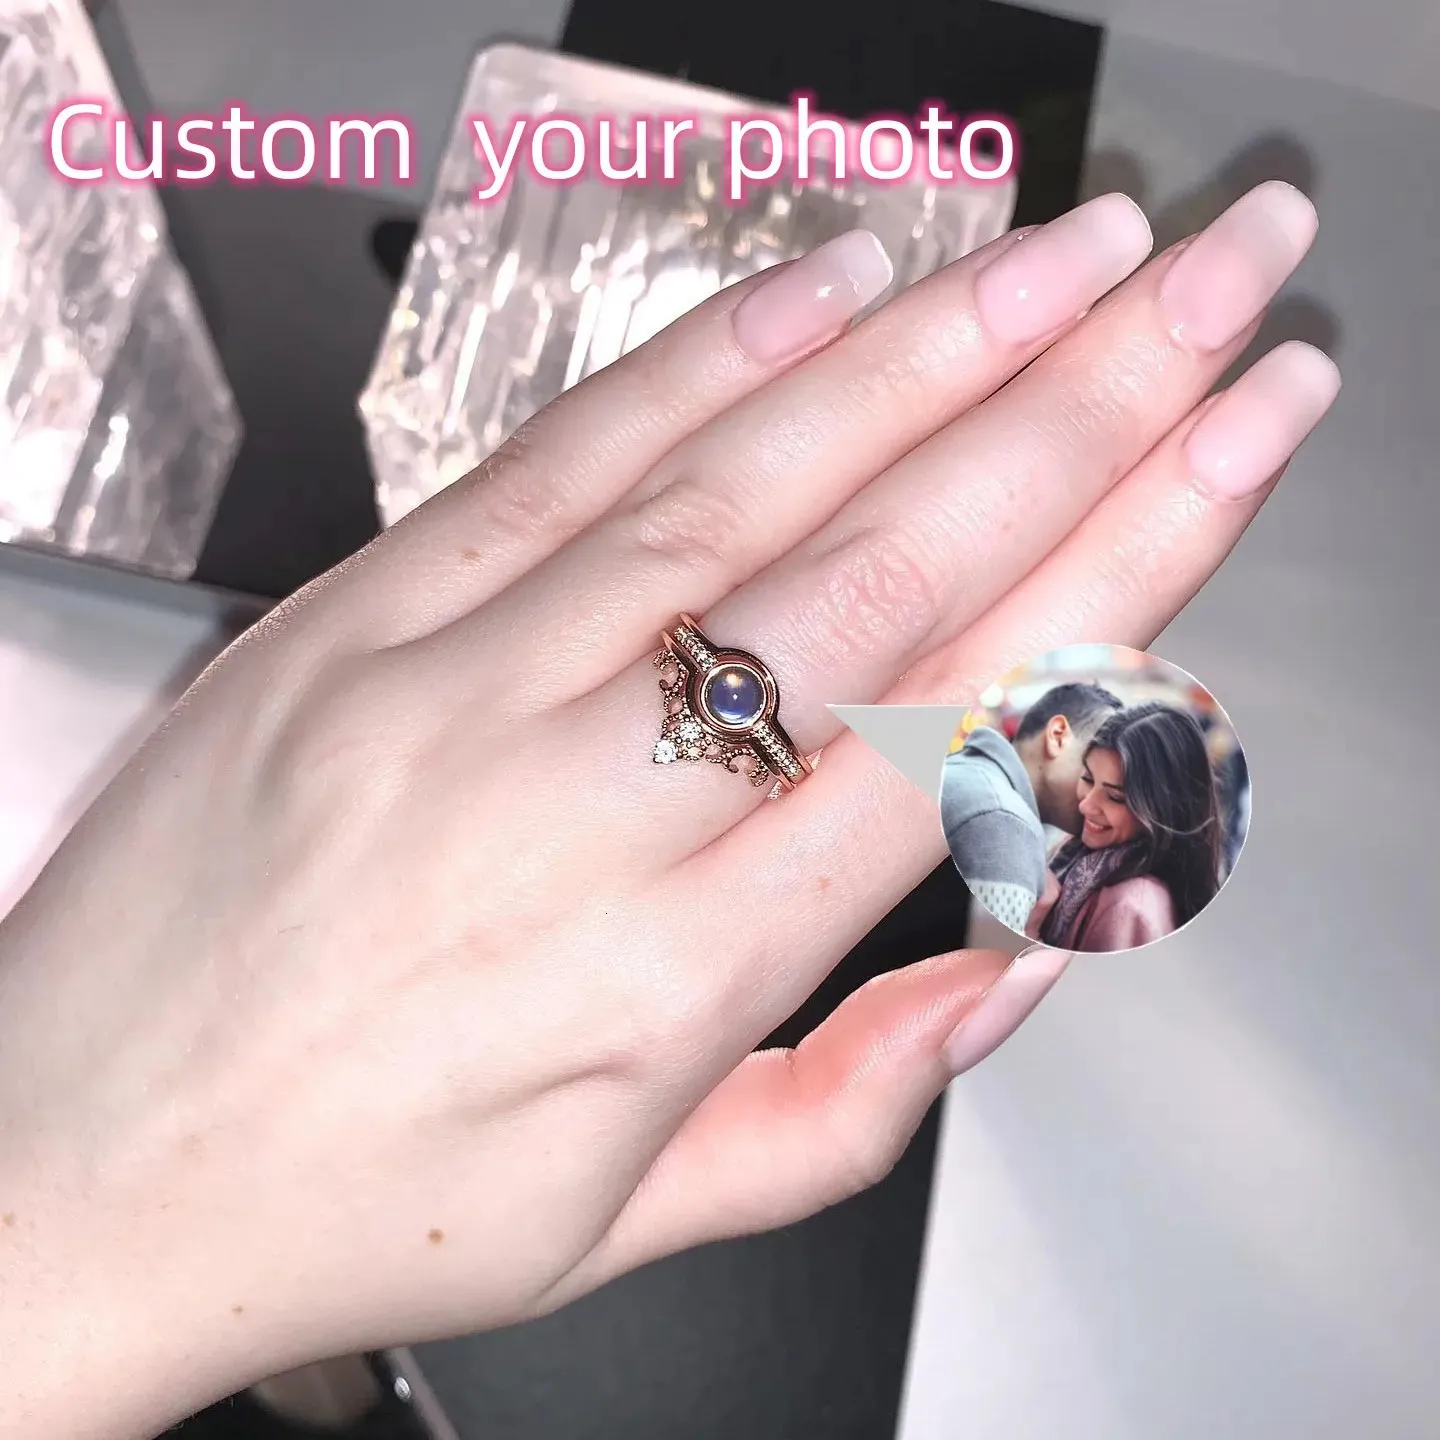 Eheringe Crystal Crown PO benutzerdefinierte Bildring mit Ihrem Bild Family Memory Pet Personalisierte Projektion Valentinstag Geschenk 231030